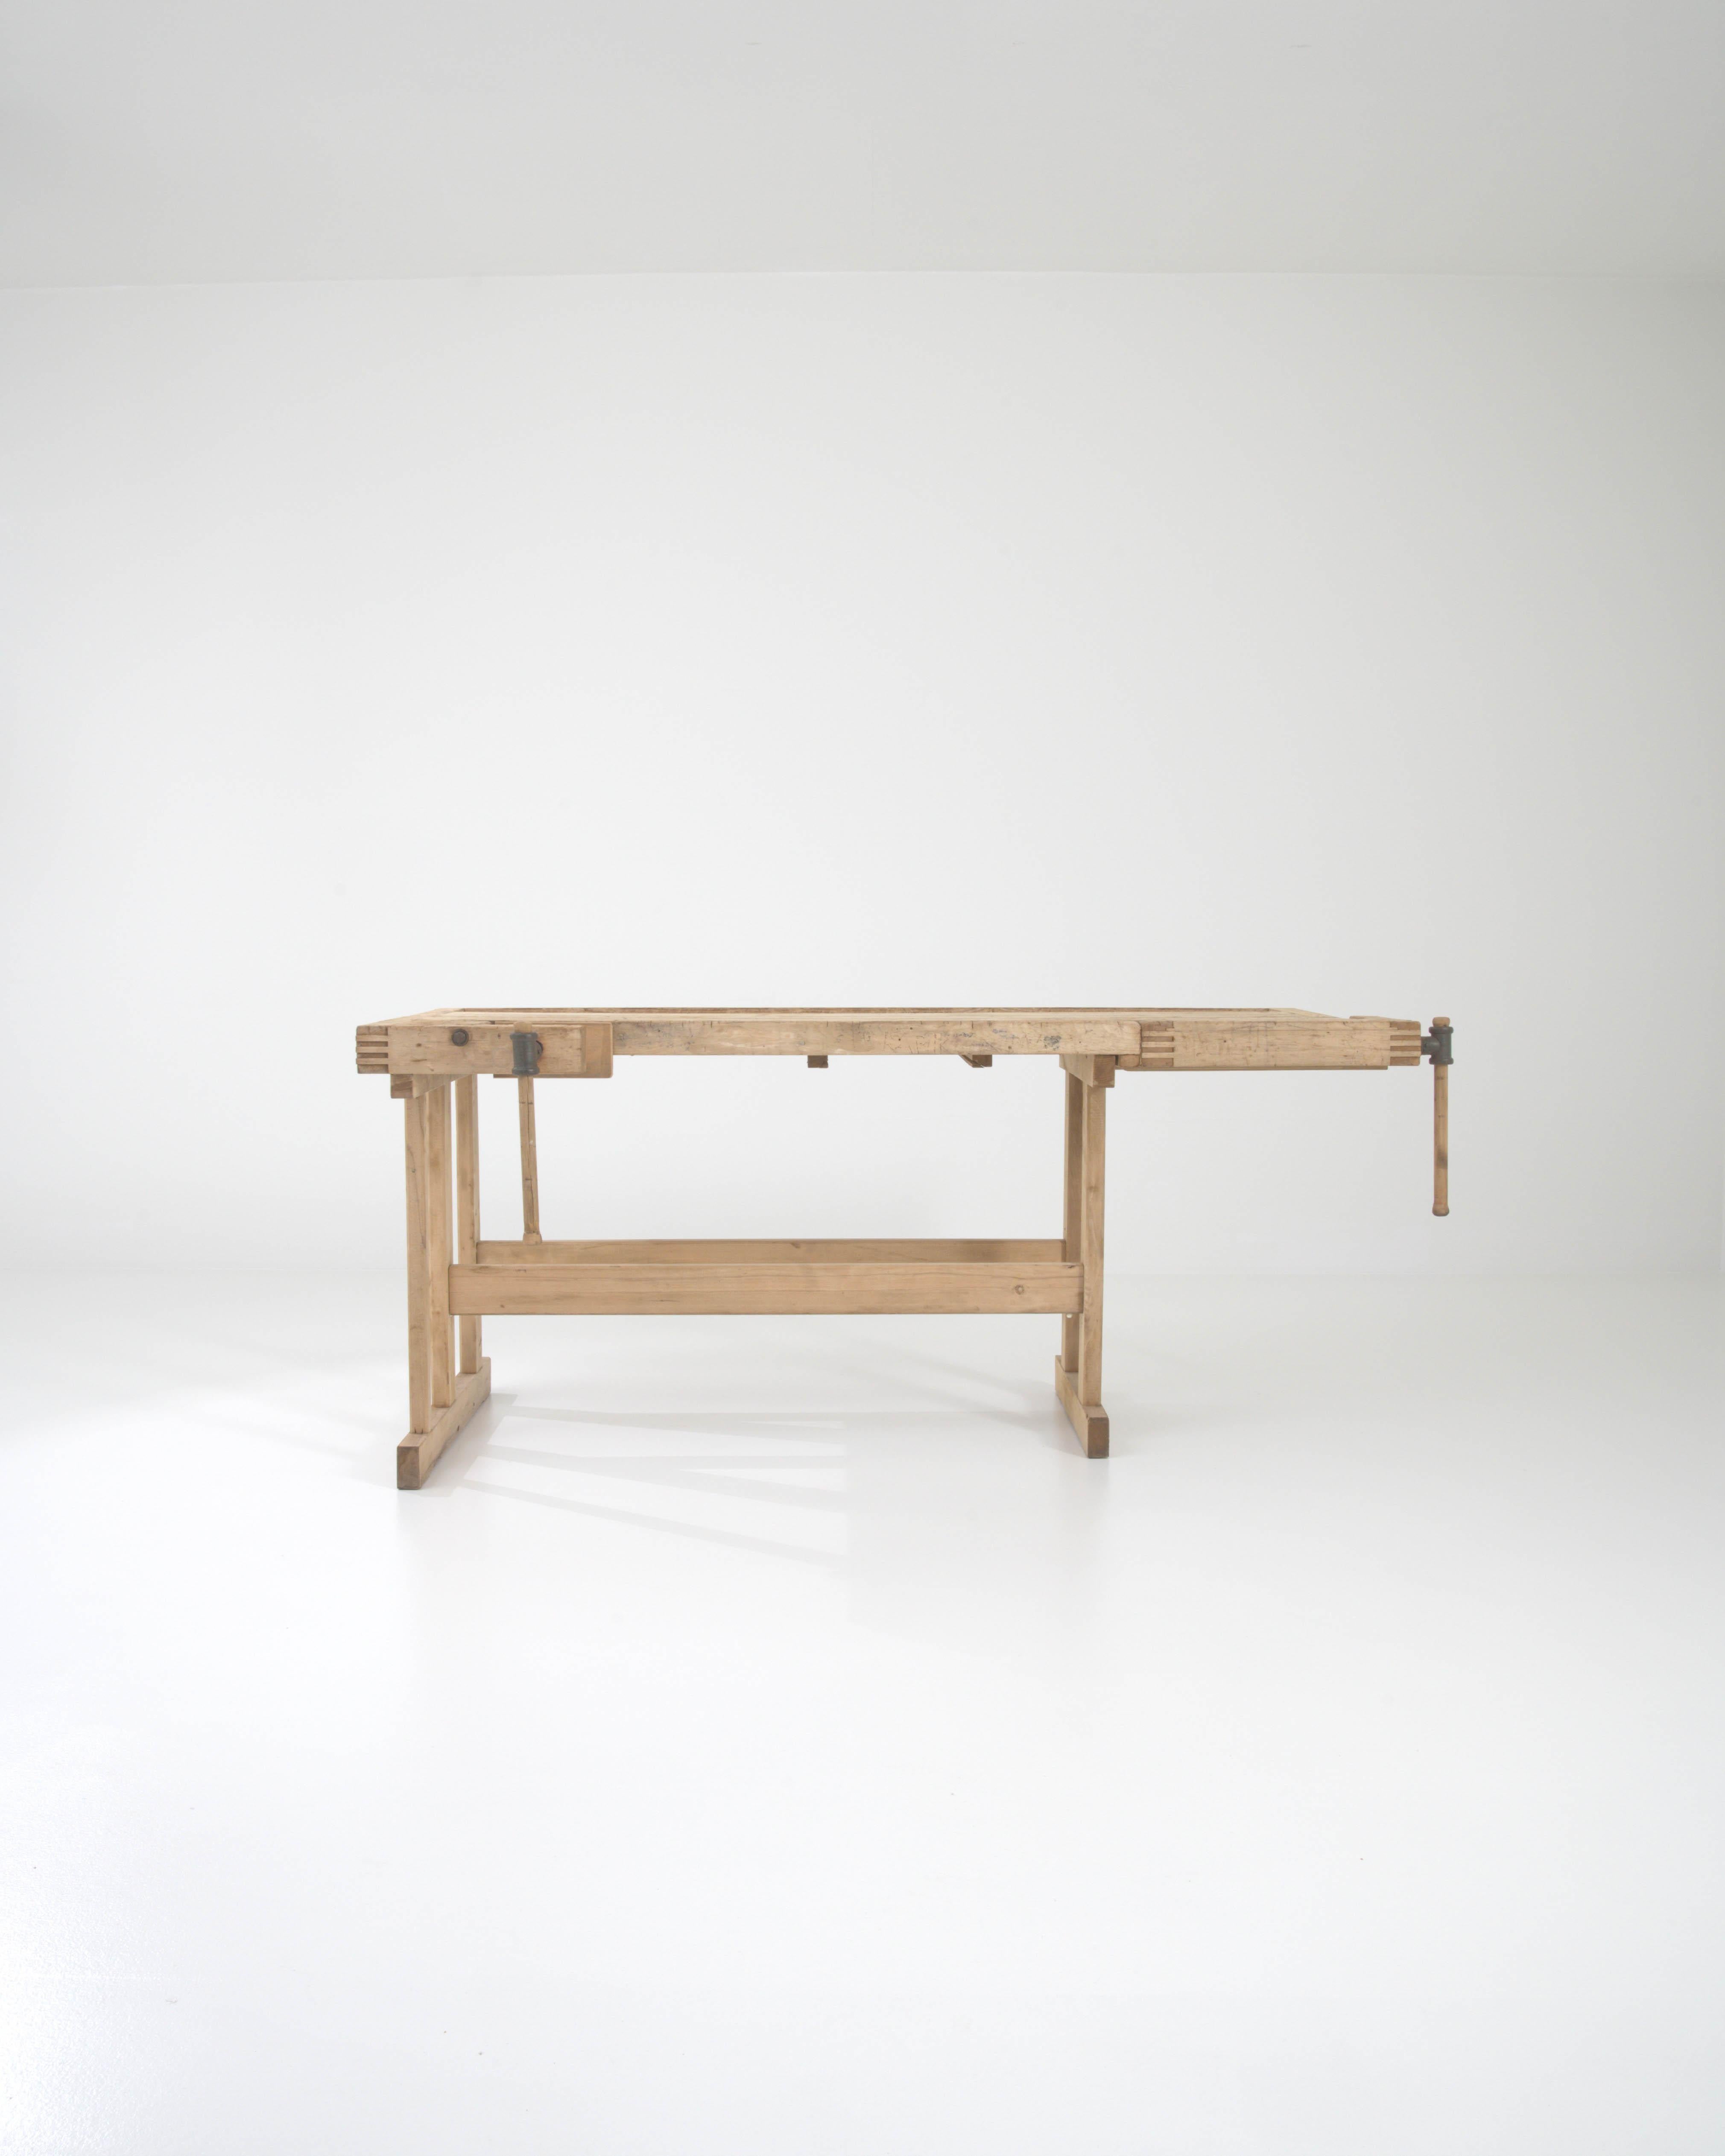 Mit seinem handwerklichen Design und seiner warmen, natürlichen Oberfläche setzt dieser Vintage-Holztisch einen eindrucksvollen industriellen Akzent. Das im 20. Jahrhundert in Belgien gebaute Stück diente ursprünglich als Werkbank eines Schreiners;